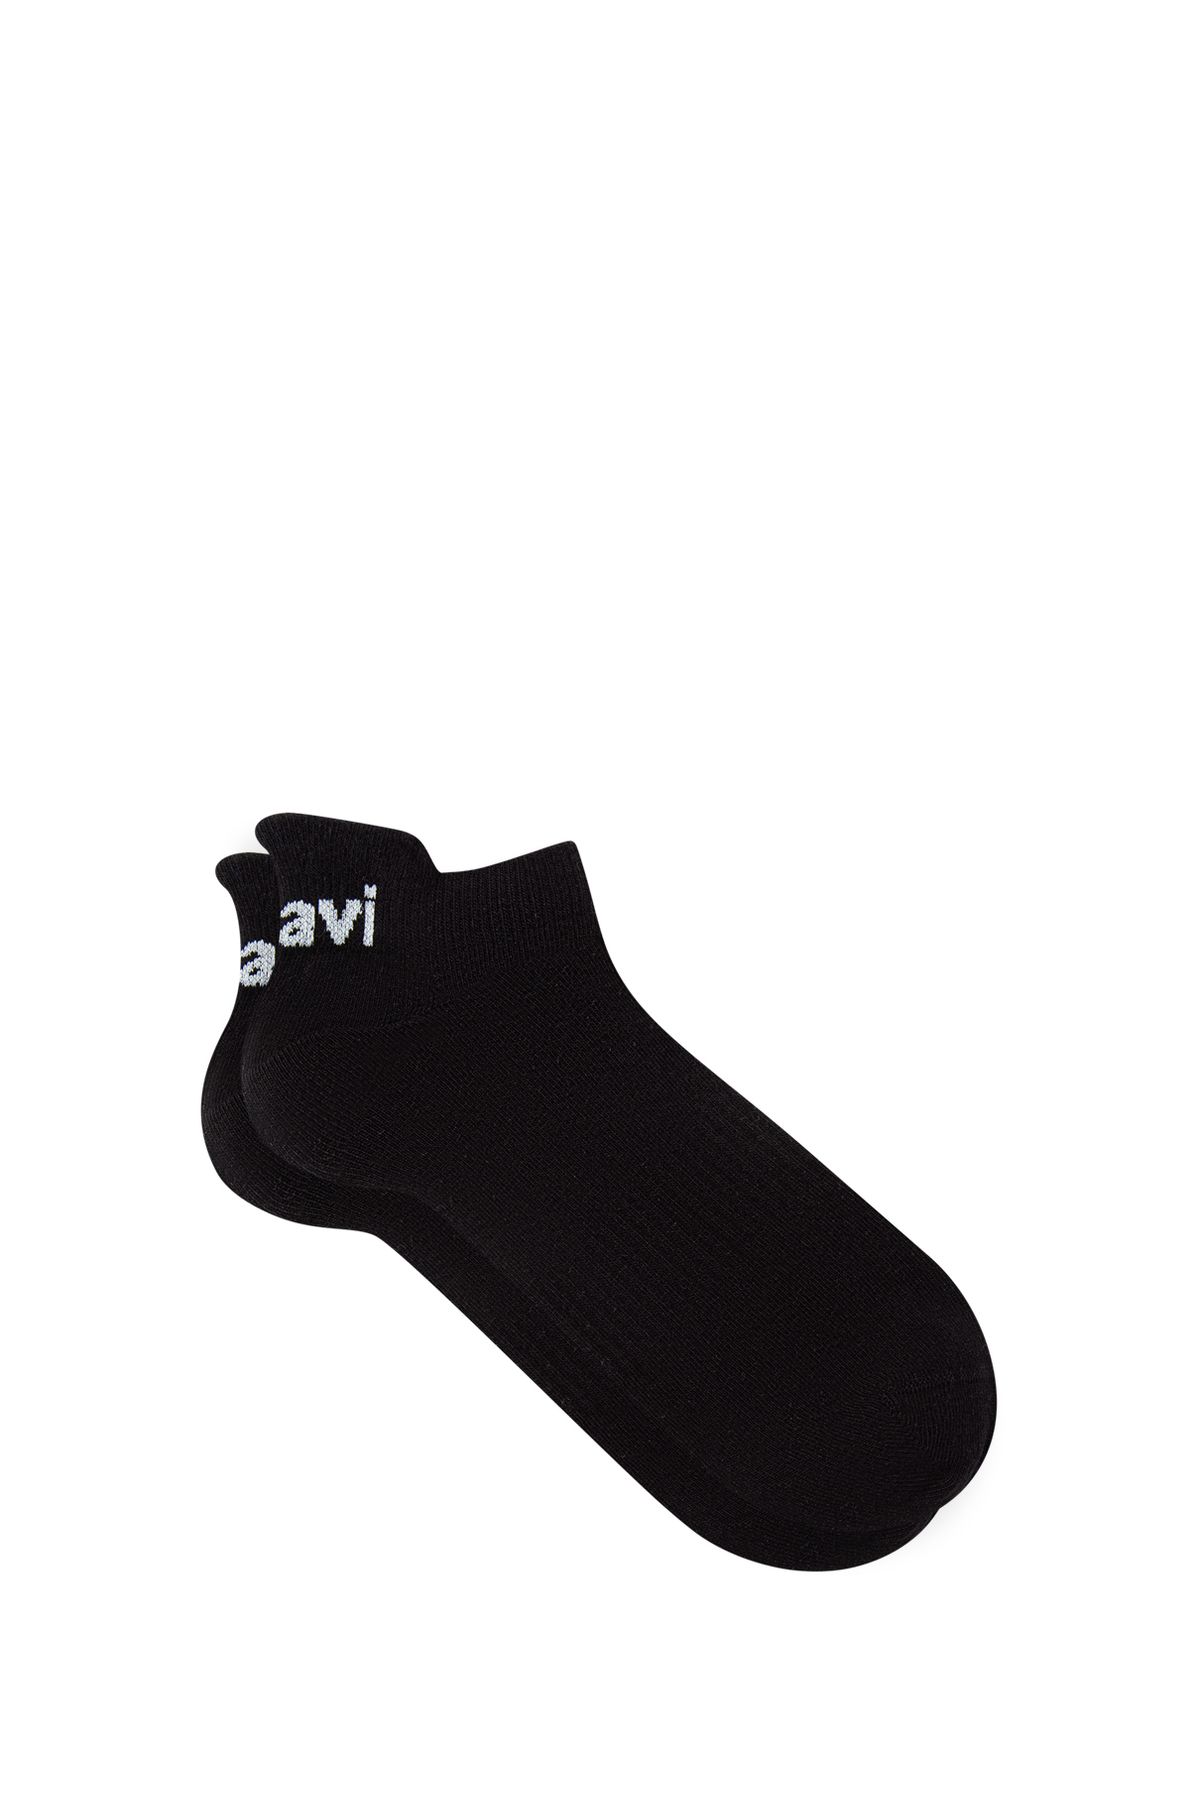 Mavi Siyah Patik Çorabı 0910779-900